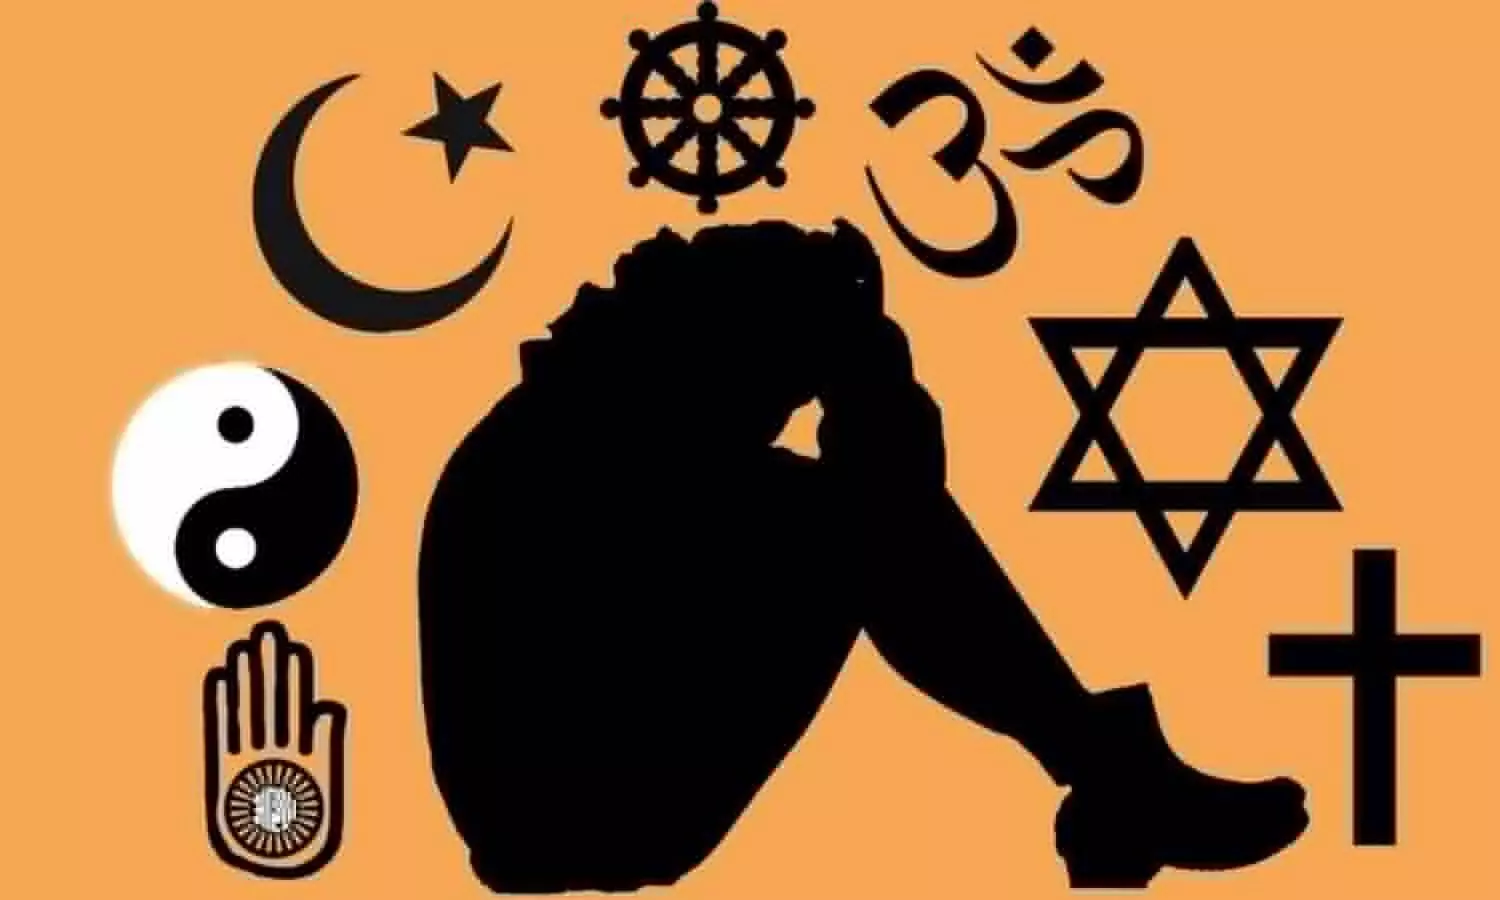 नवीन से बन गया नावेद अहमद, मुस्लिम दोस्तों ने ब्रेन वाश कर कराया धर्म परिवर्तन